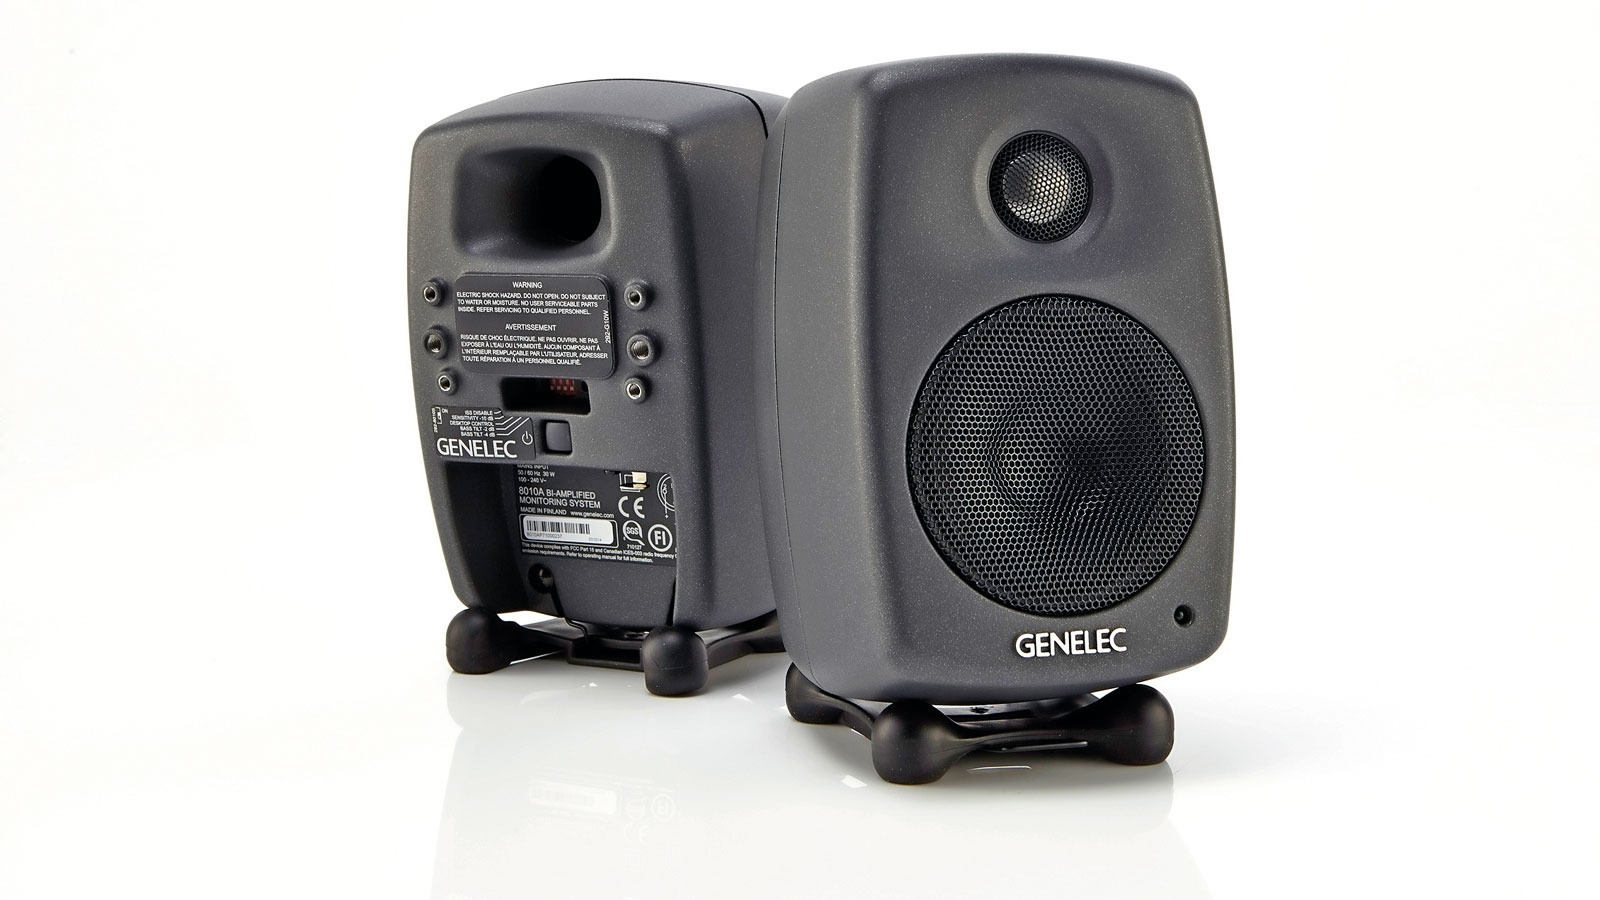 genelec computer speakers